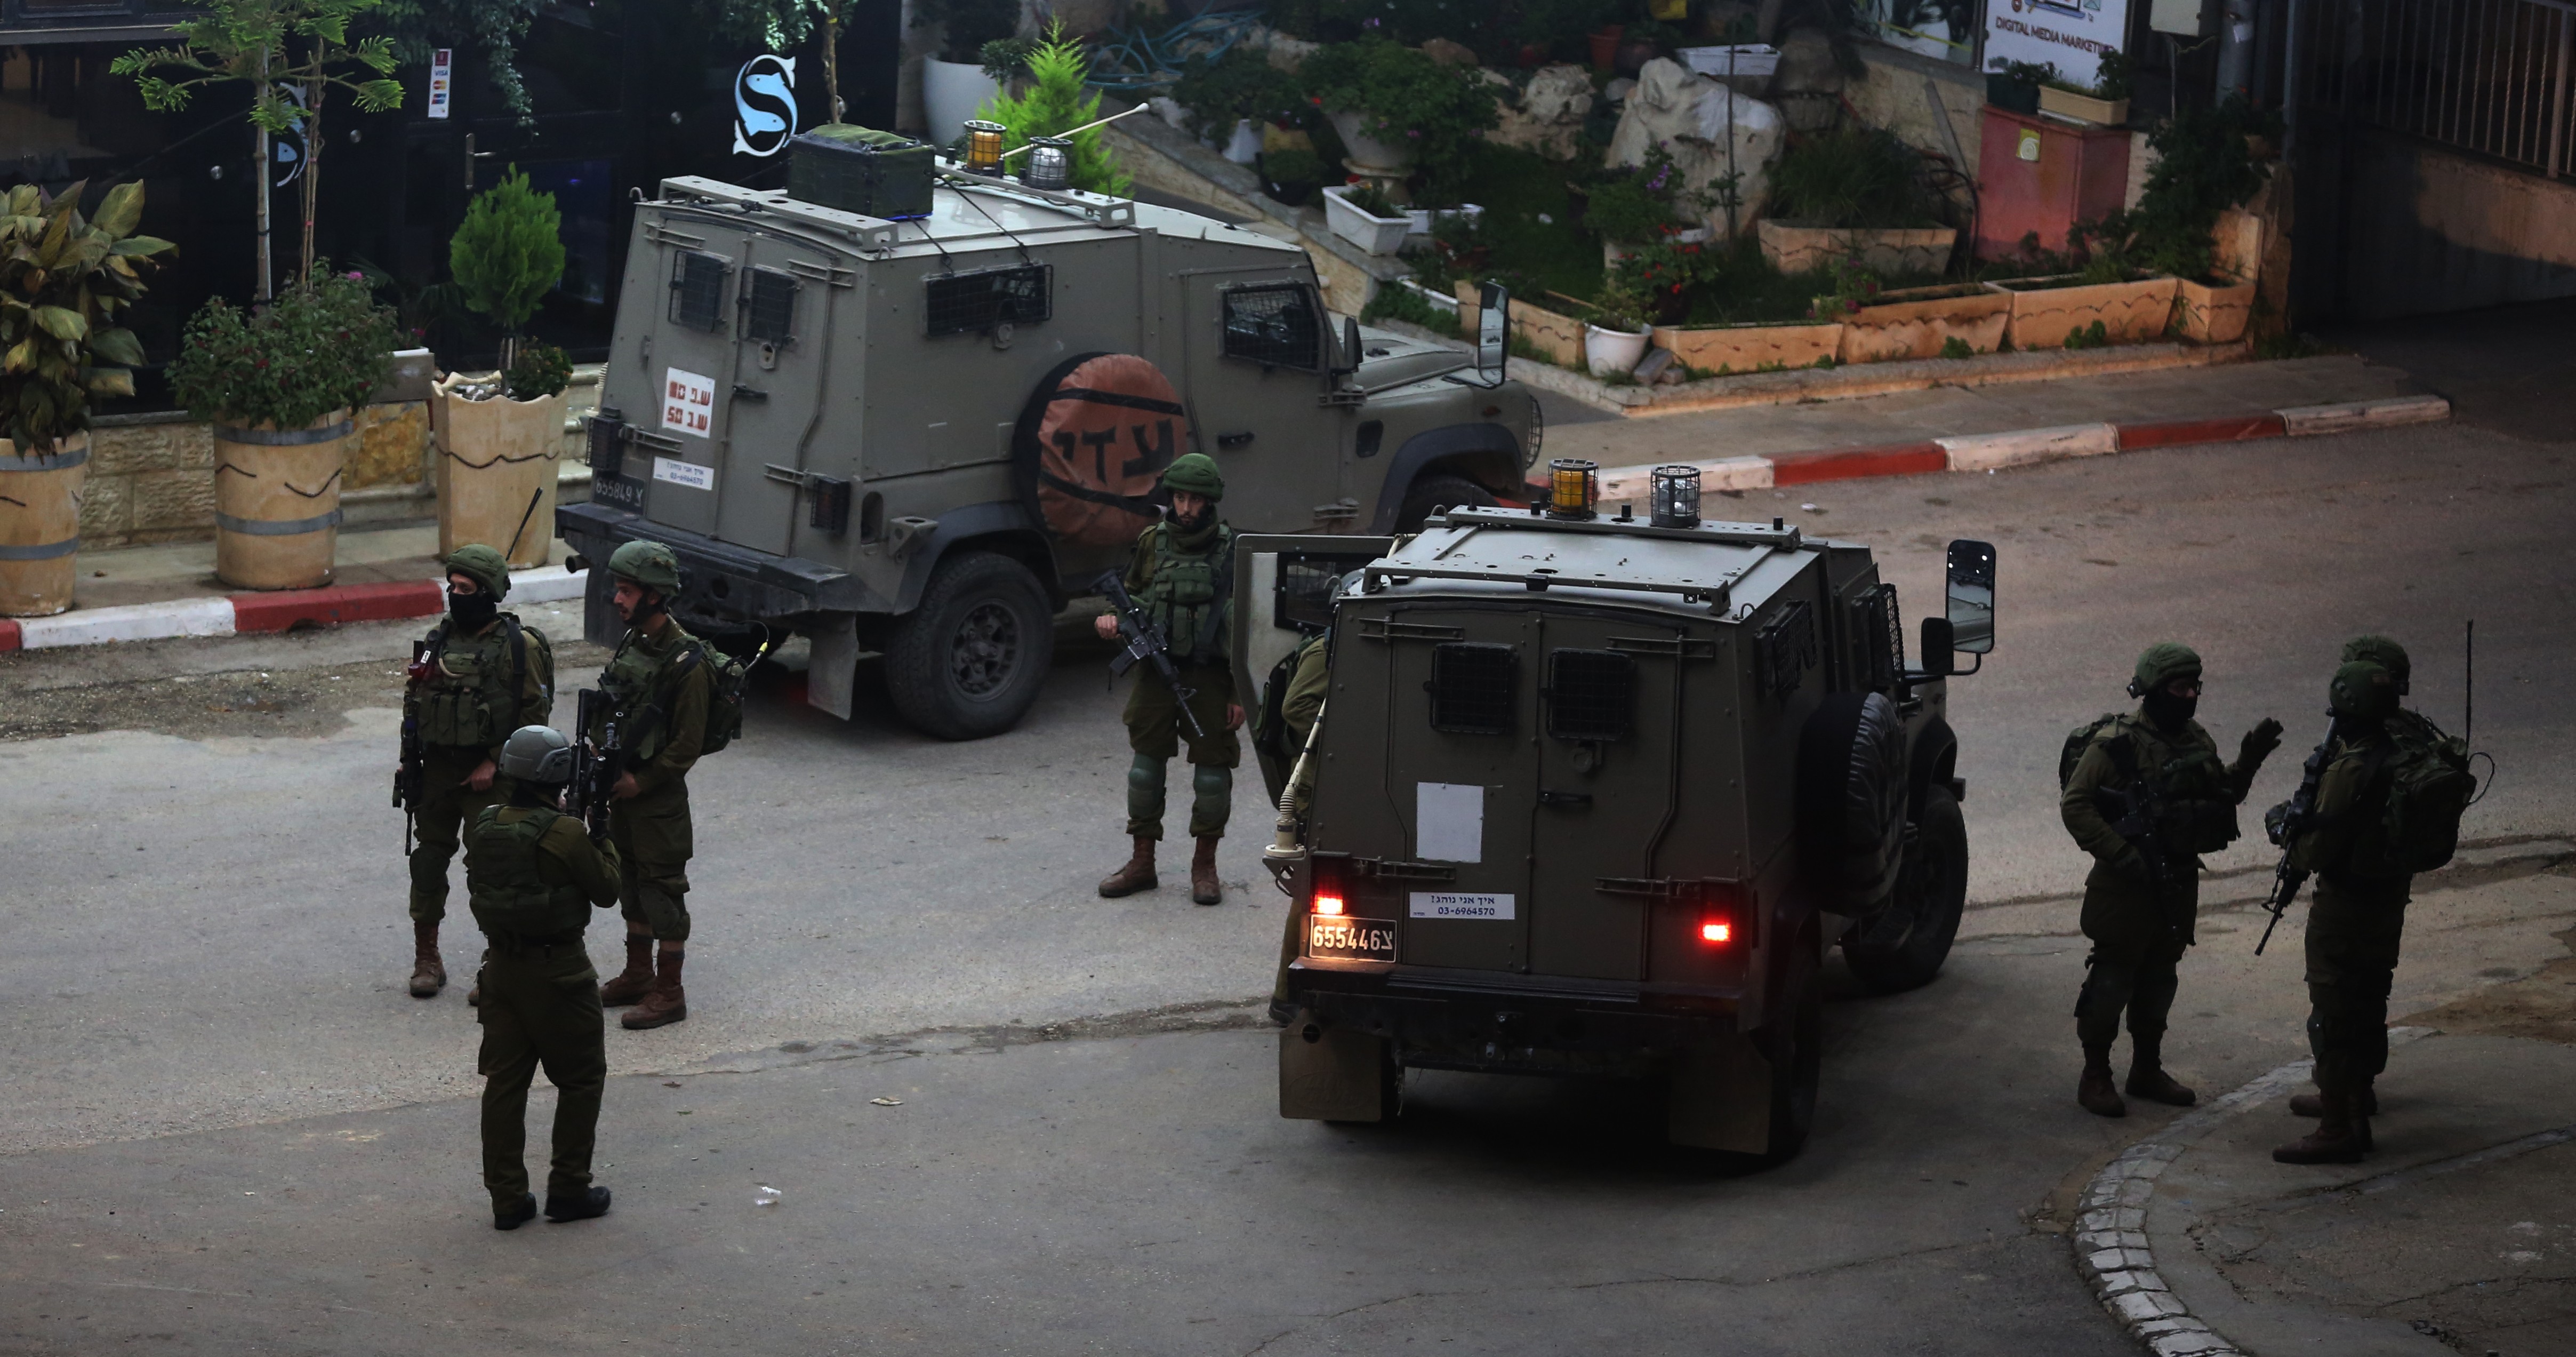  الاحتلال الصهيوني يعتقل 3 فلسطينيين في رام الله 